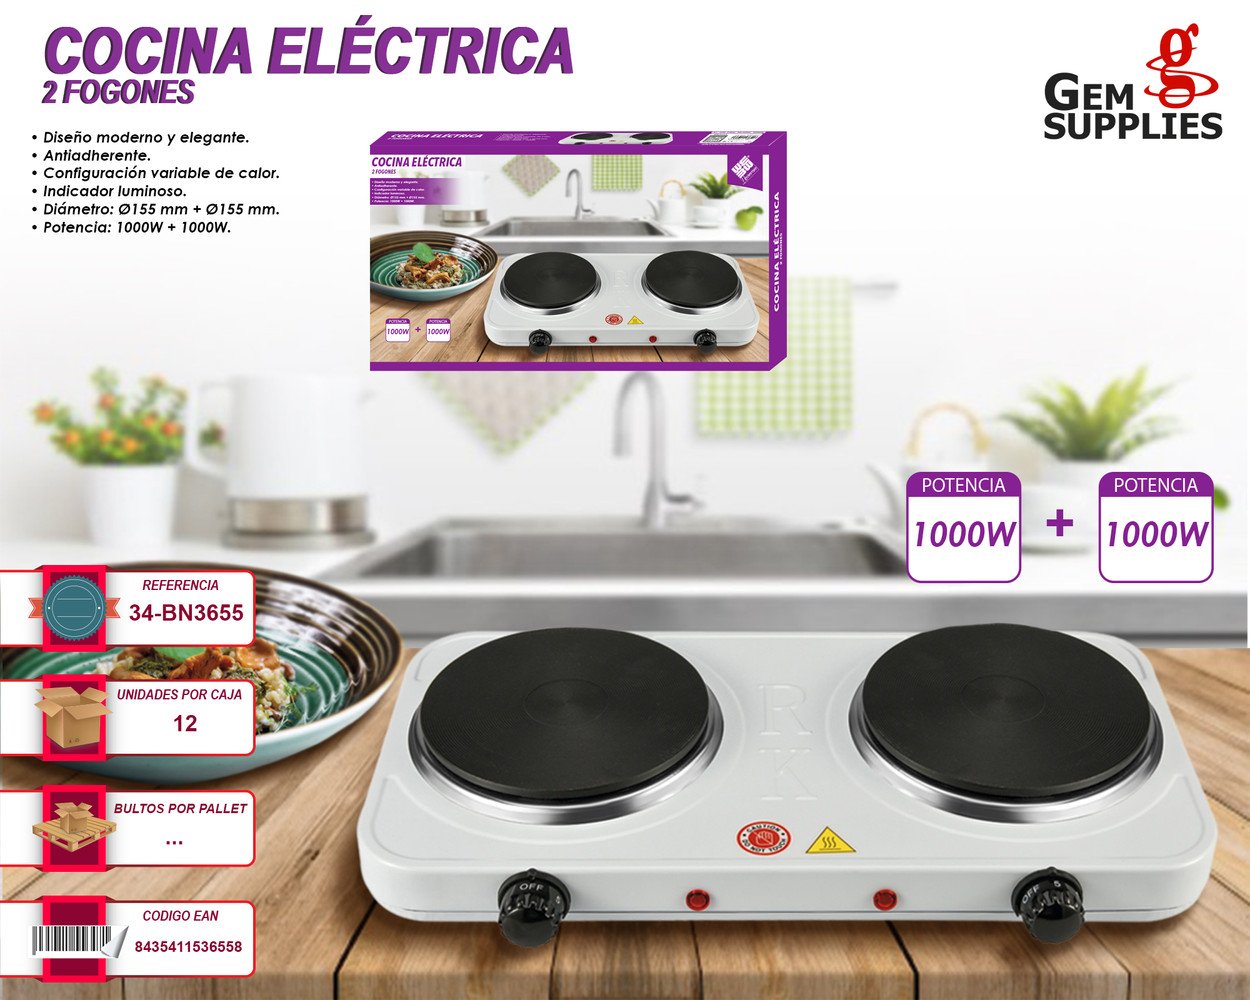 https://images.ssstatic.com/cocina-electrica-portatil-dos-platos-we-houseware-67-68884460.jpg